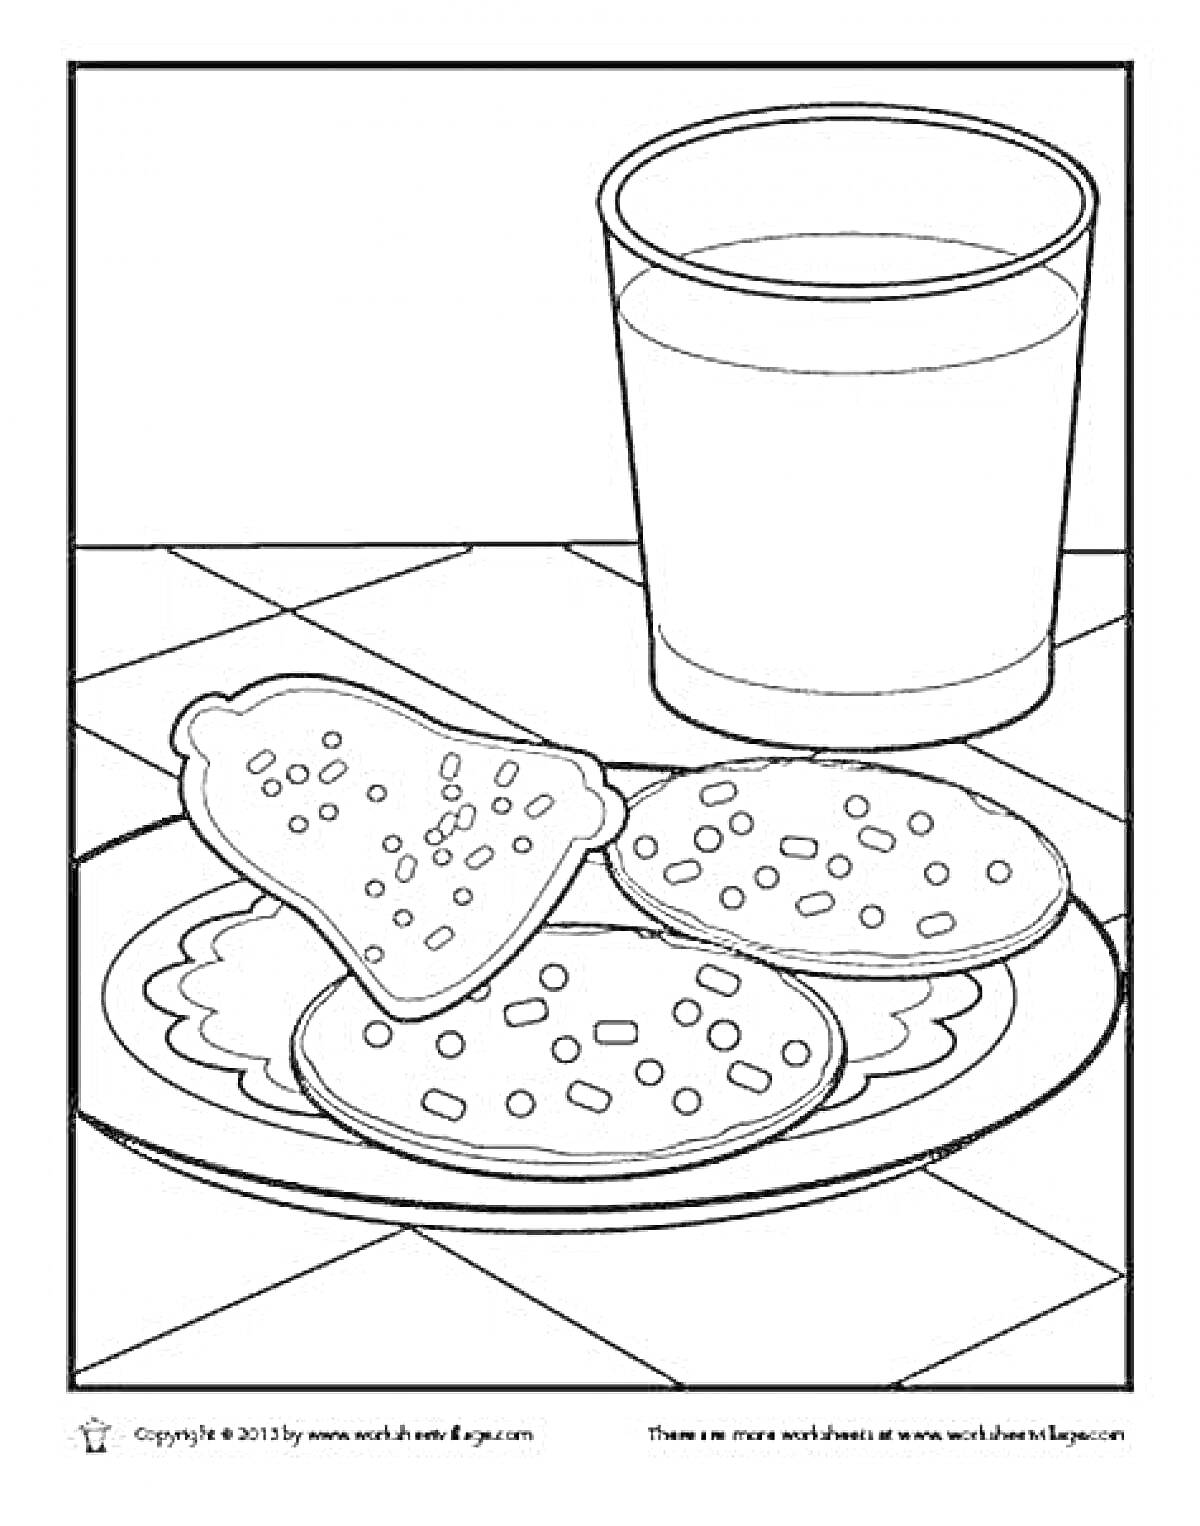 Раскраска Тарелка с сырниками, кусоком хлеба и стаканом молока на столе